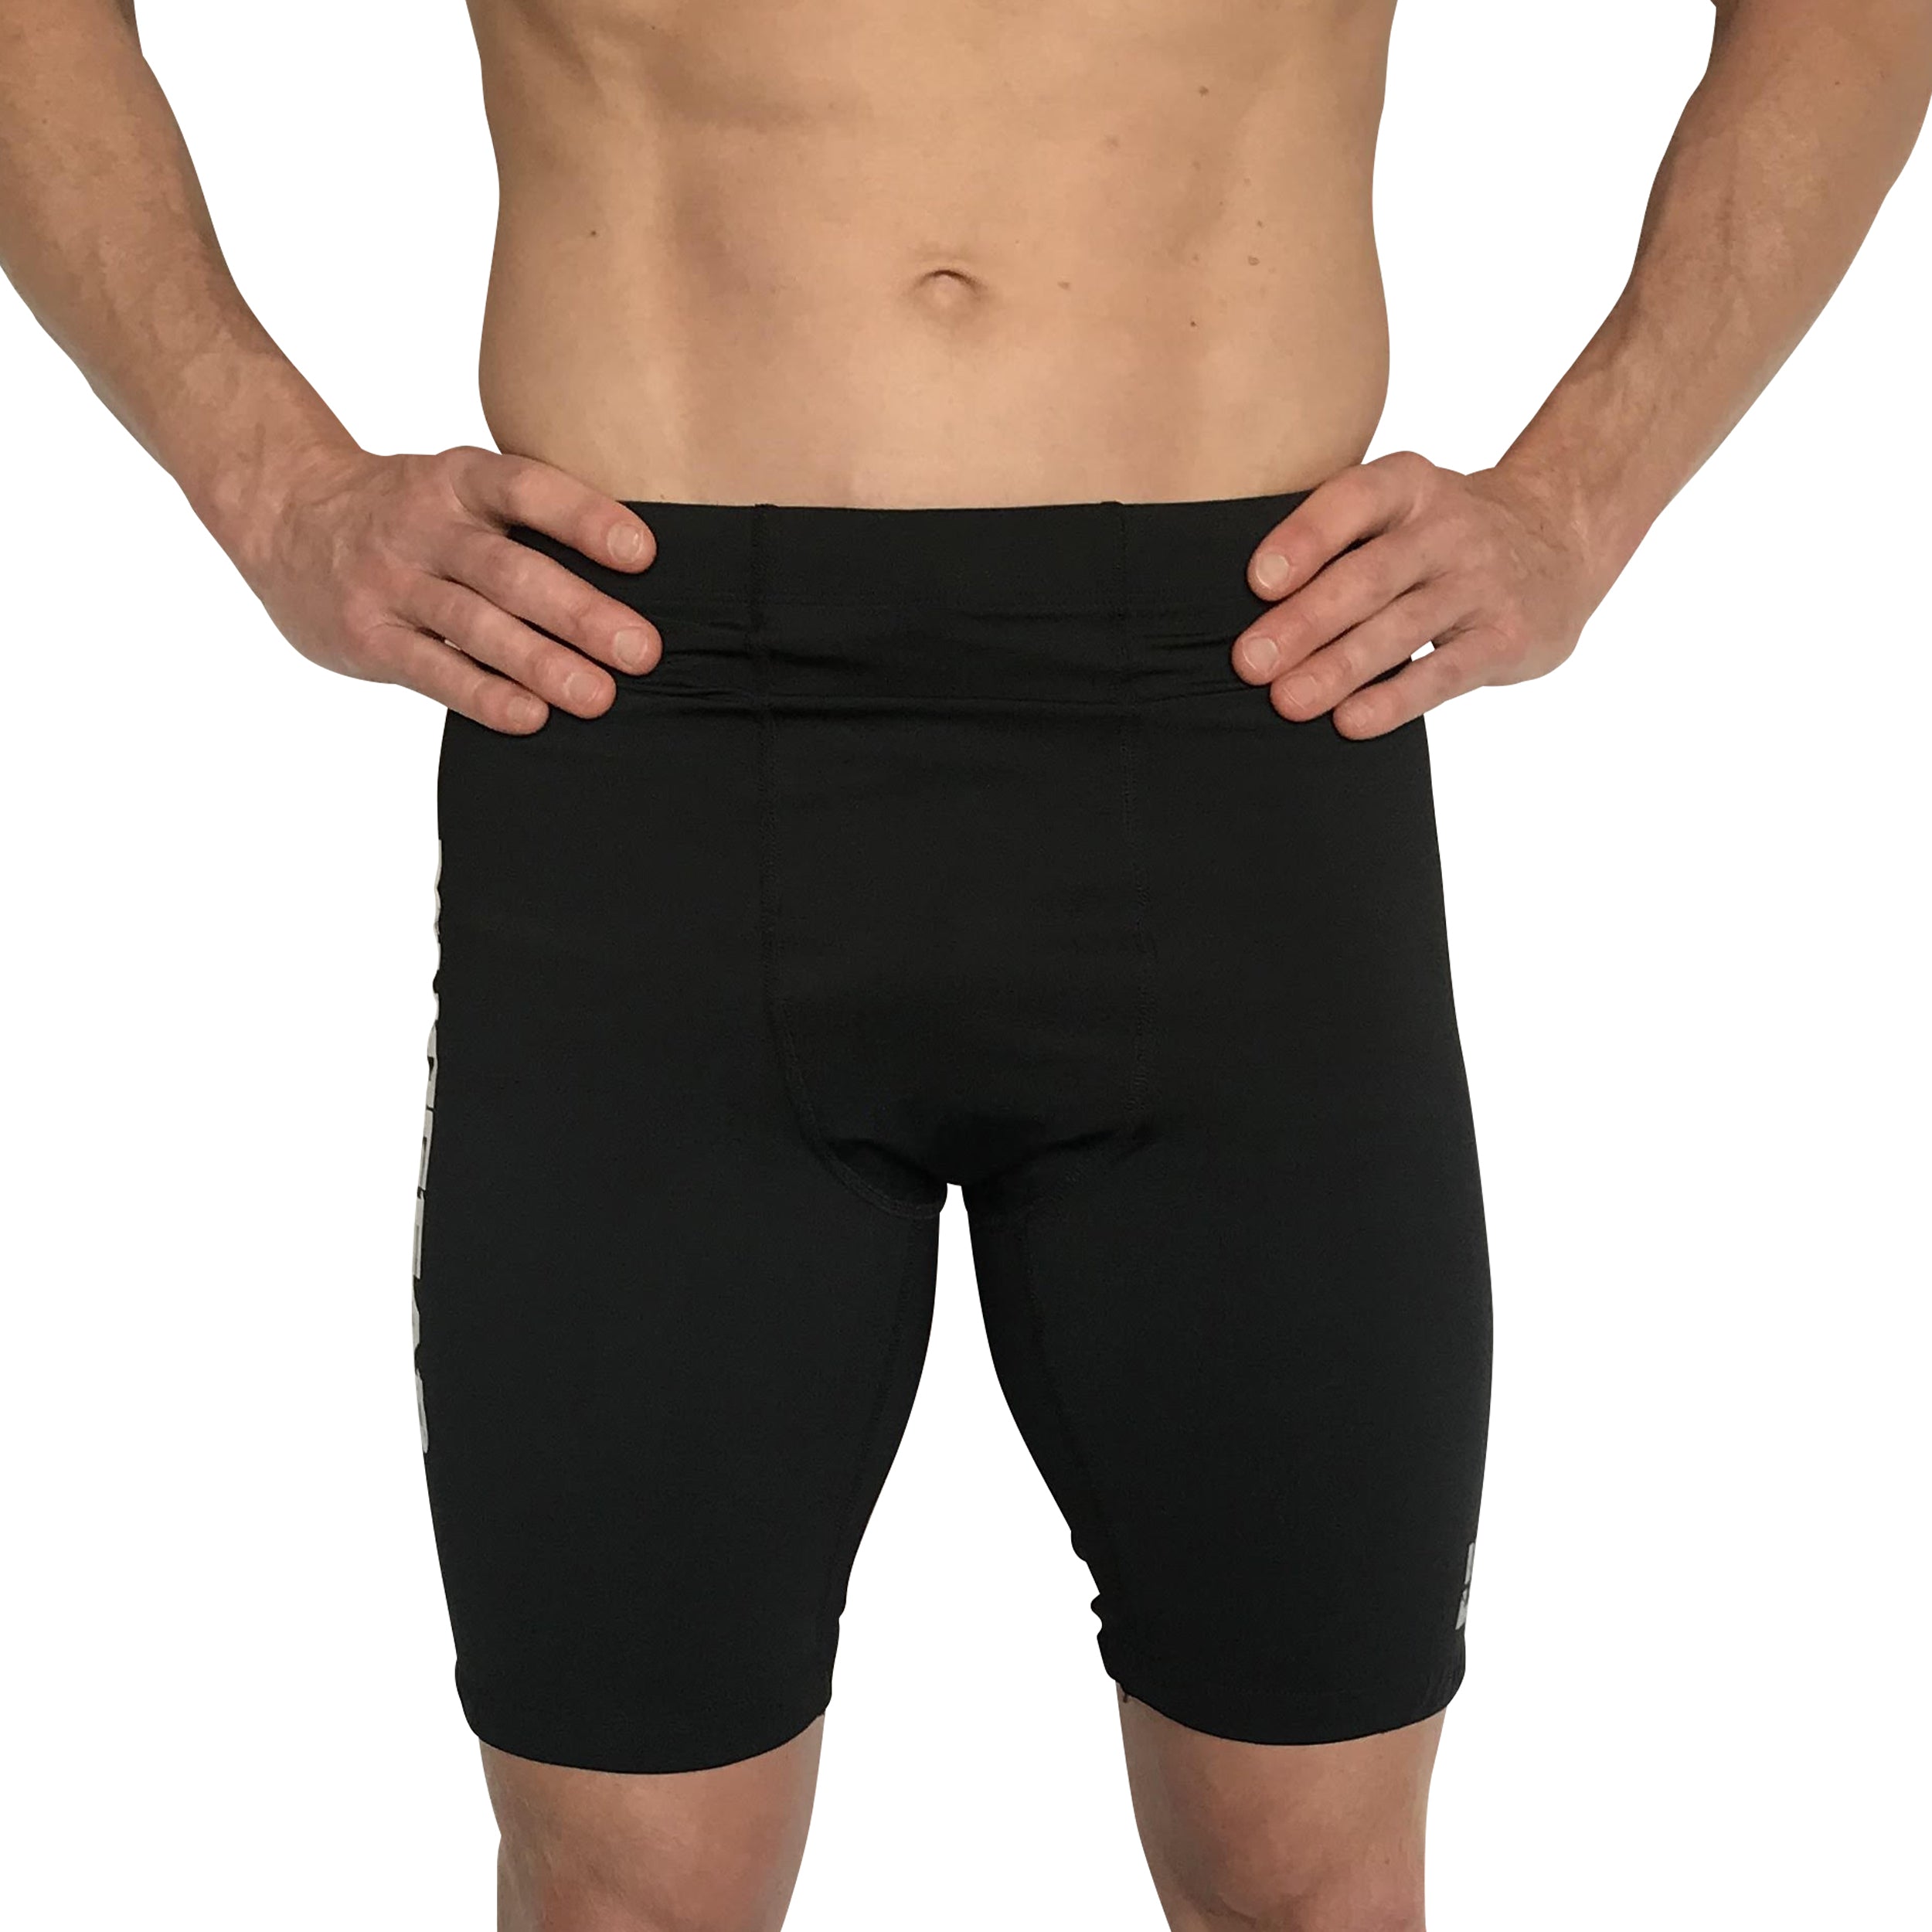  Men's Compression Shorts